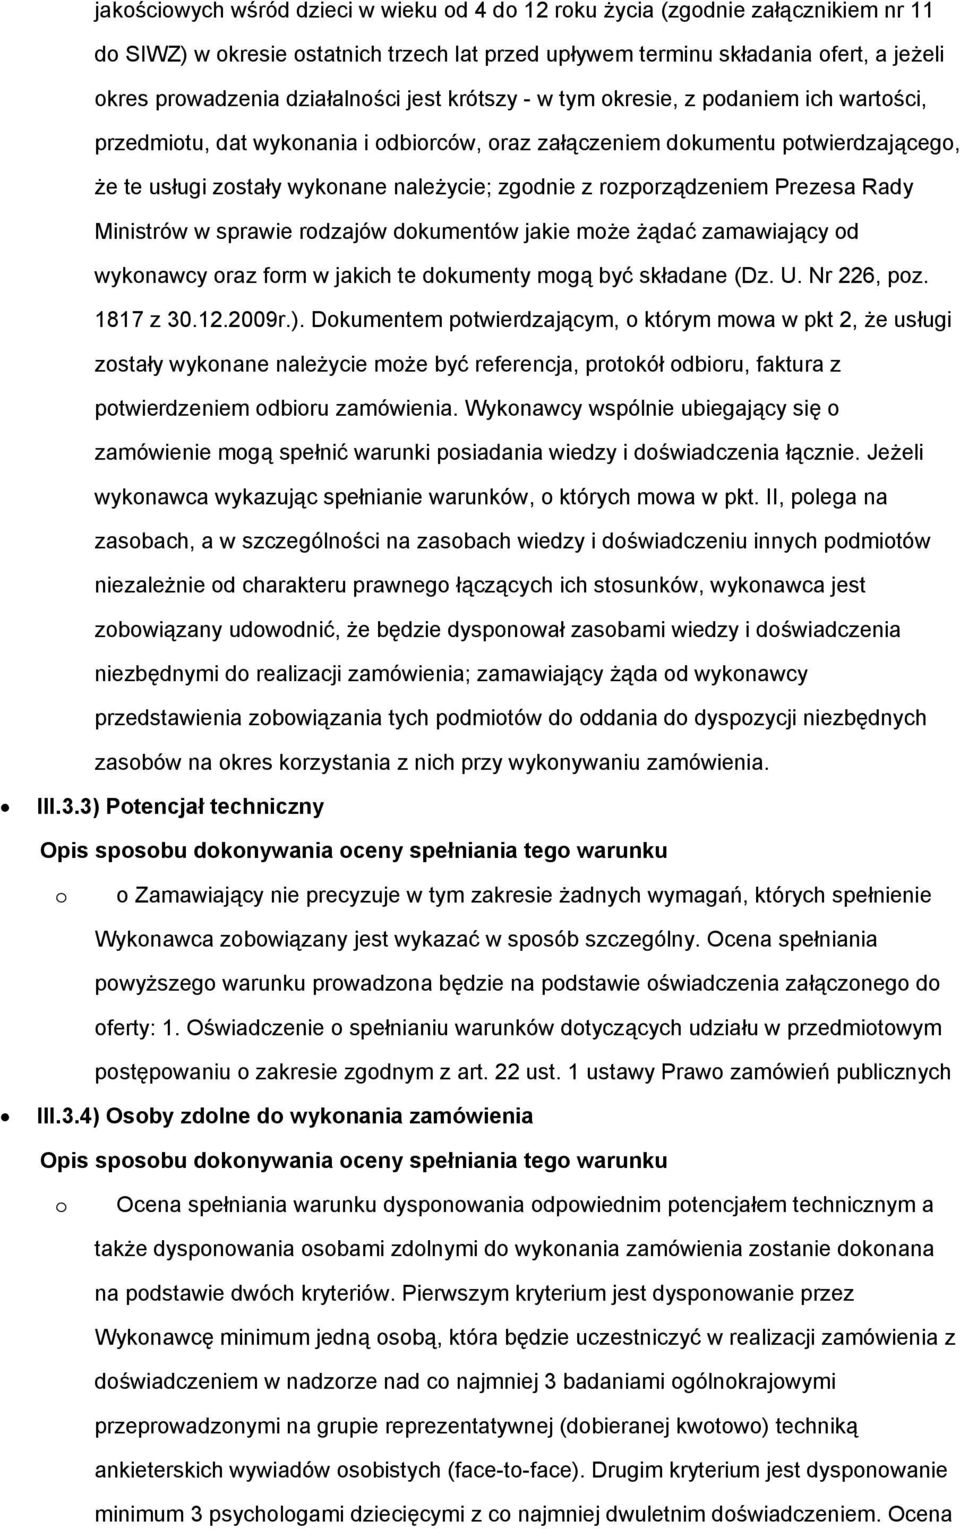 Ministrów w sprawie rdzajów dkumentów jakie mże żądać zamawiający d wyknawcy raz frm w jakich te dkumenty mgą być składane (Dz. U. Nr 226, pz. 1817 z 30.12.2009r.).